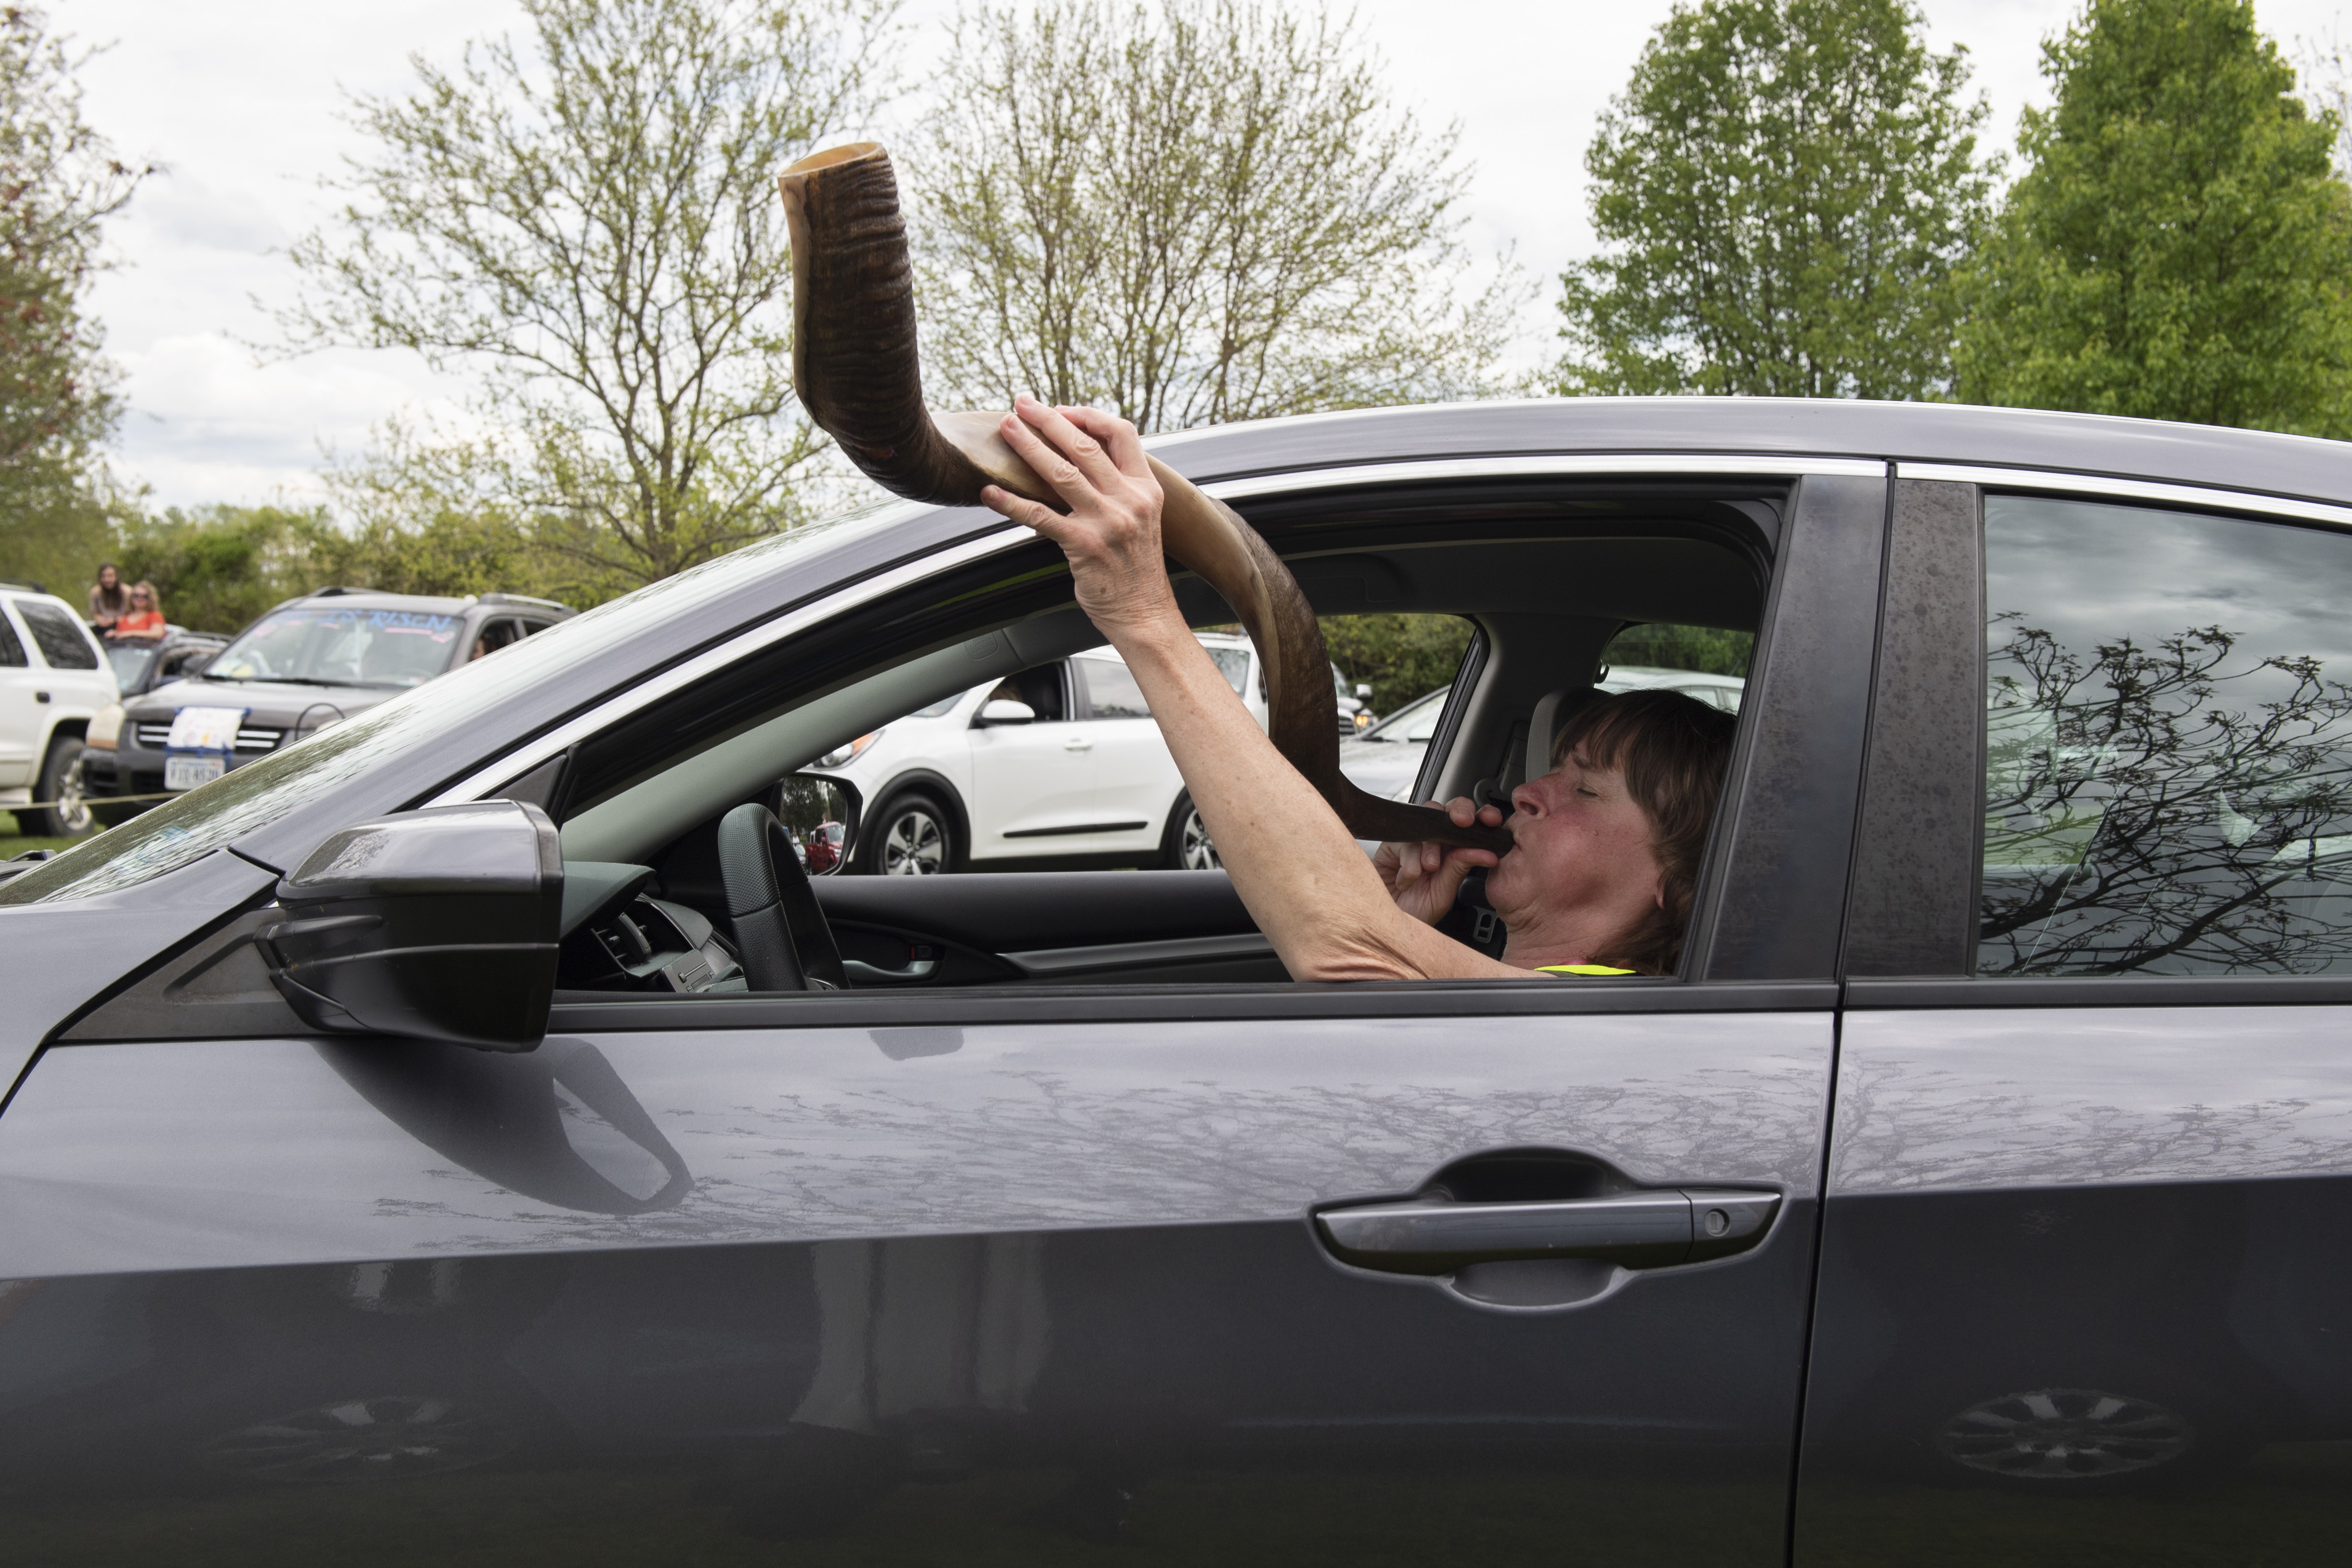 A woman in a car blowing a shofar.